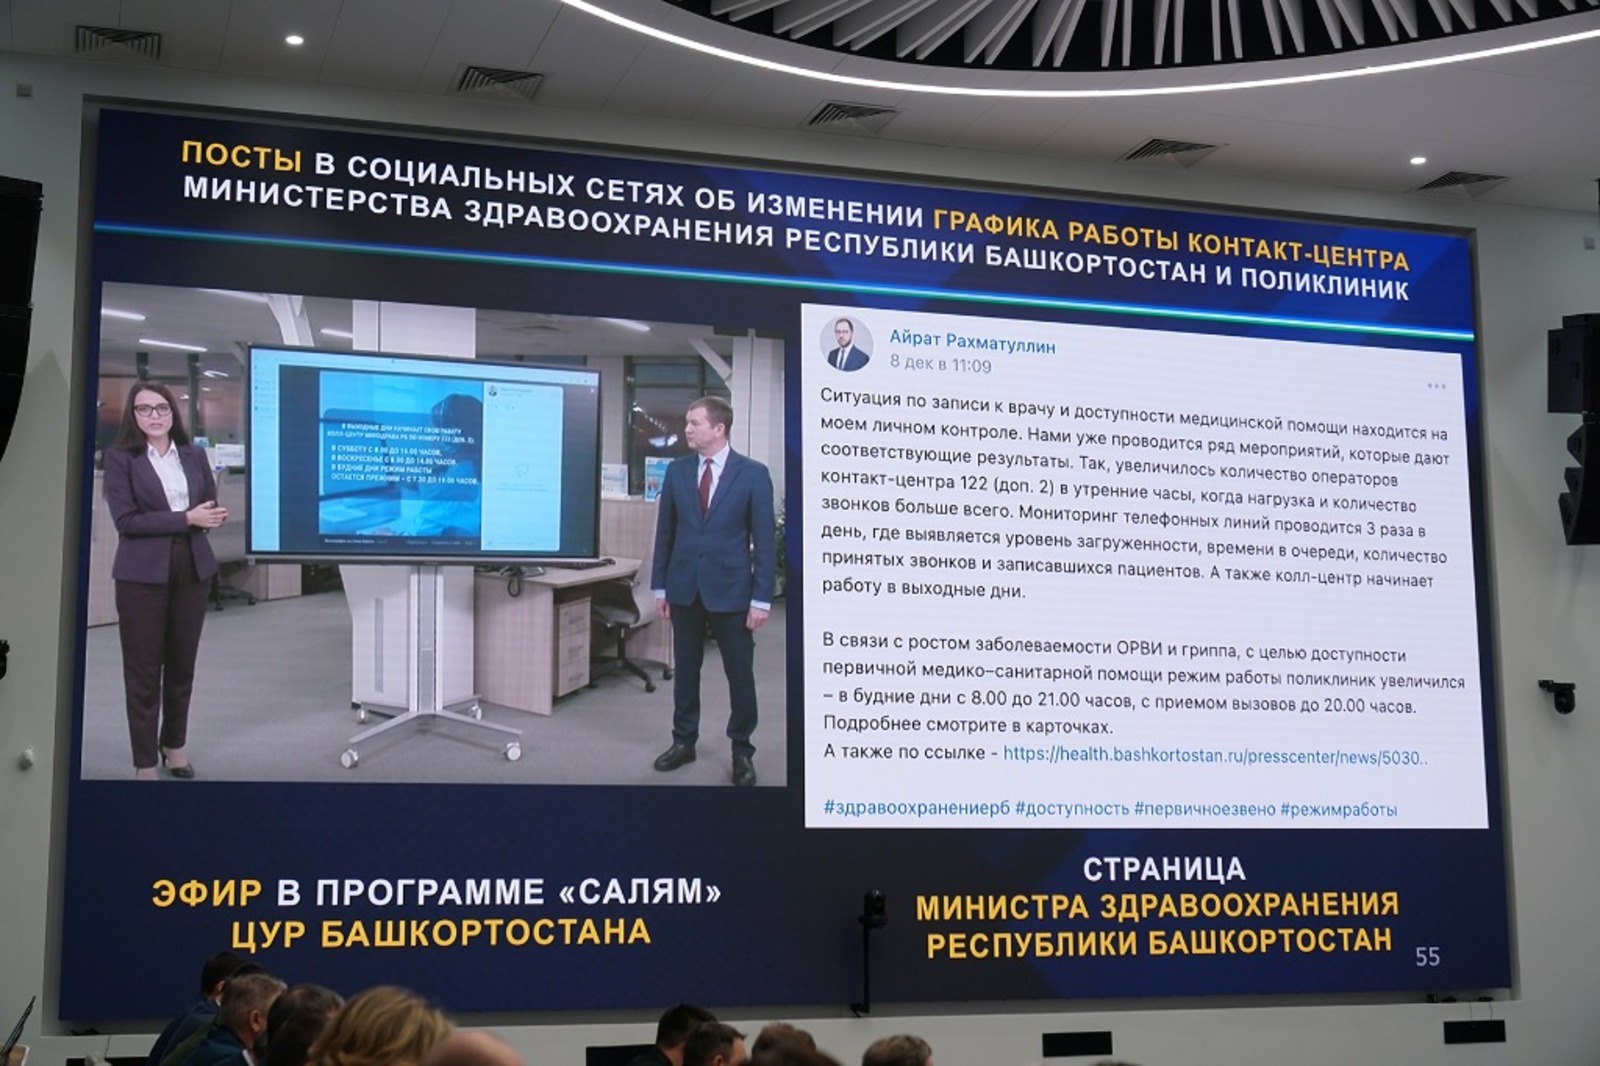 В Башкортостане снизилось число обращений в соцсетях по теме здравоохранения